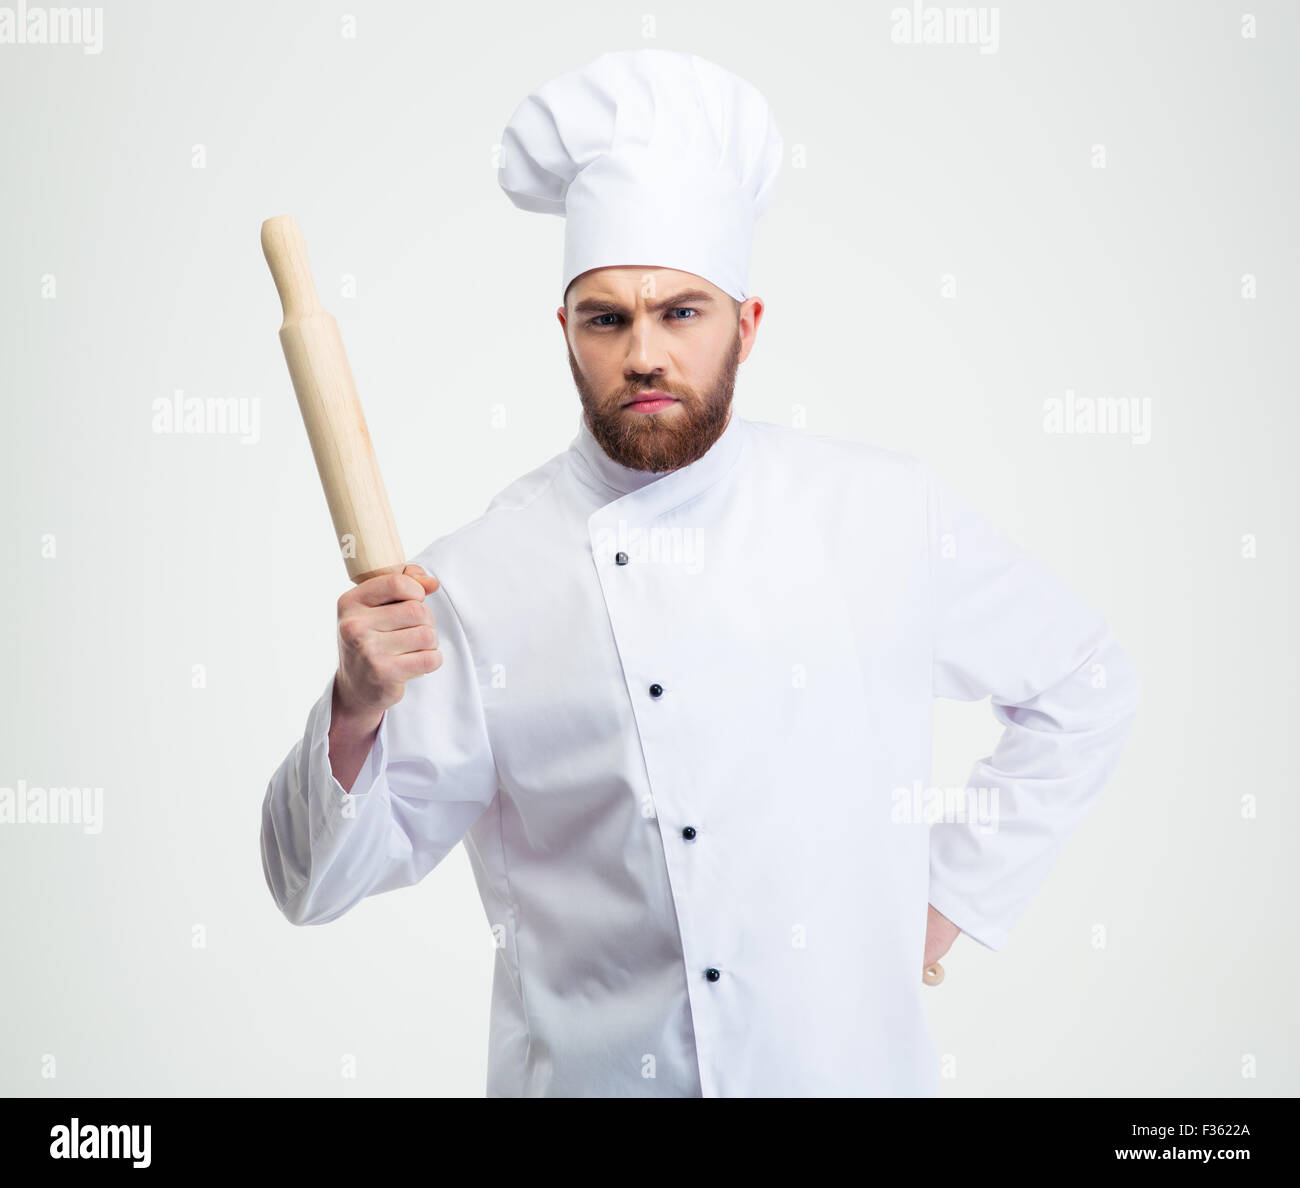 Ritratto di un maschio serio chef cucinare tenendo un matterello isolato su uno sfondo bianco Foto Stock